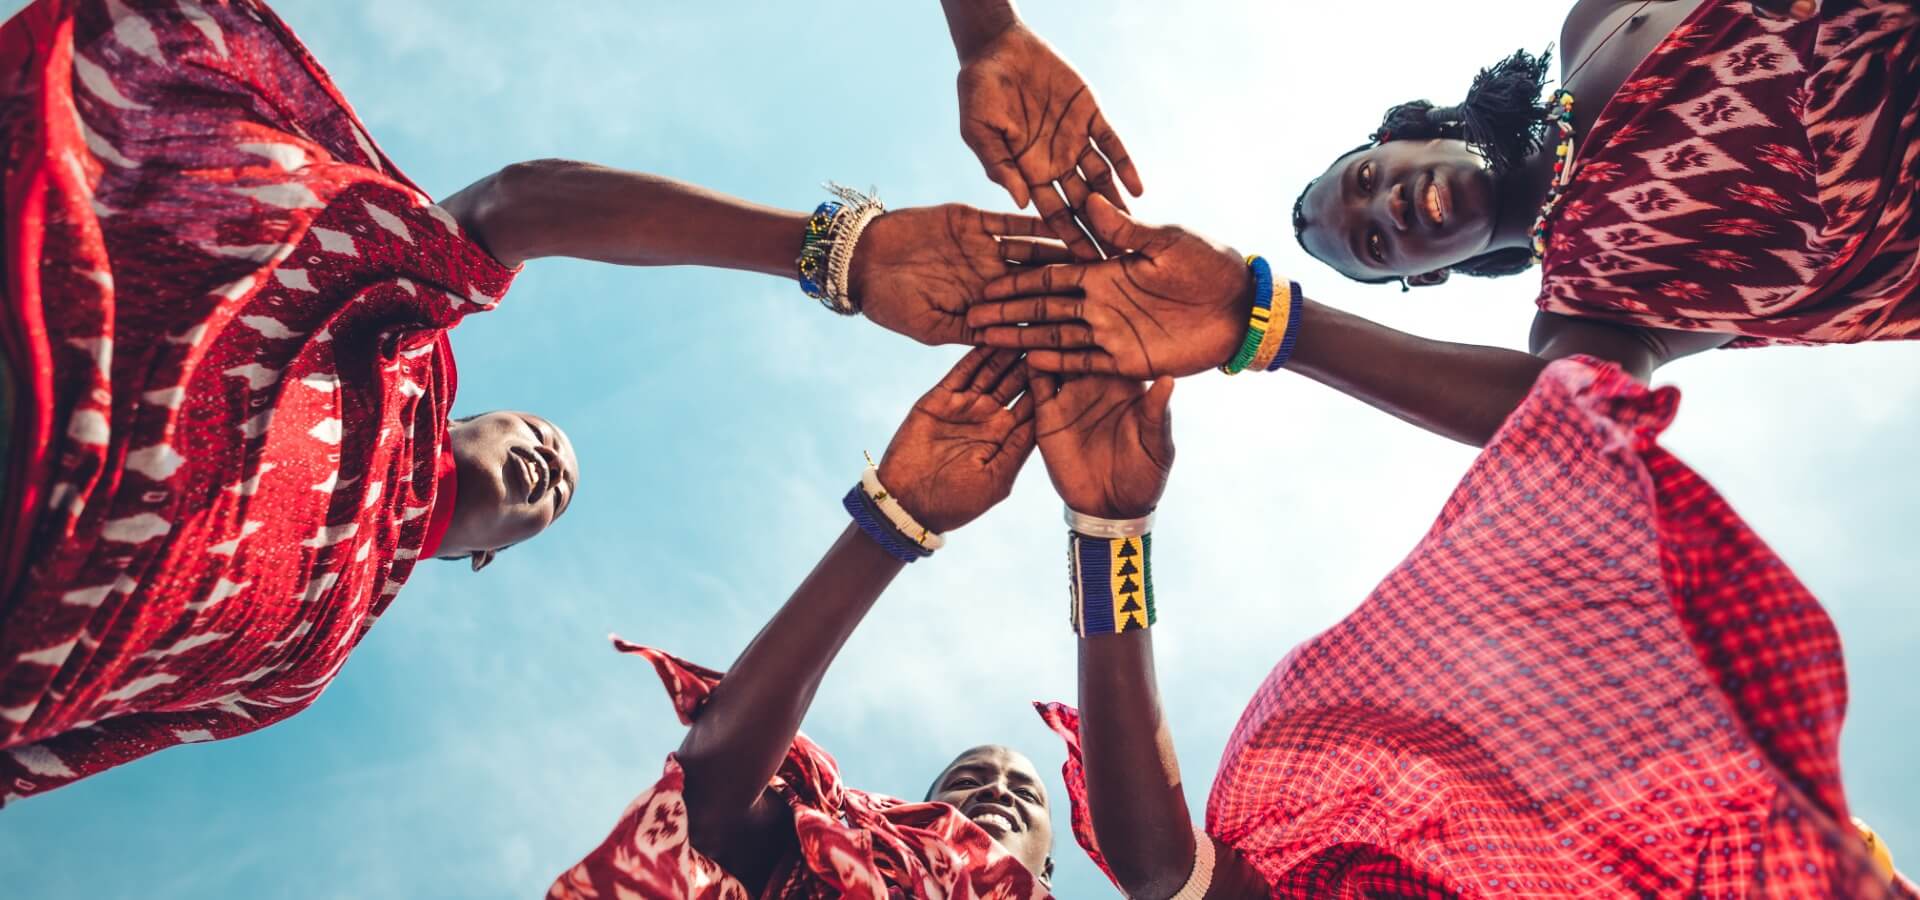 Grupo de mulheres afrodescendentes unindo as mãos, foto tirada com o céu no fundo.